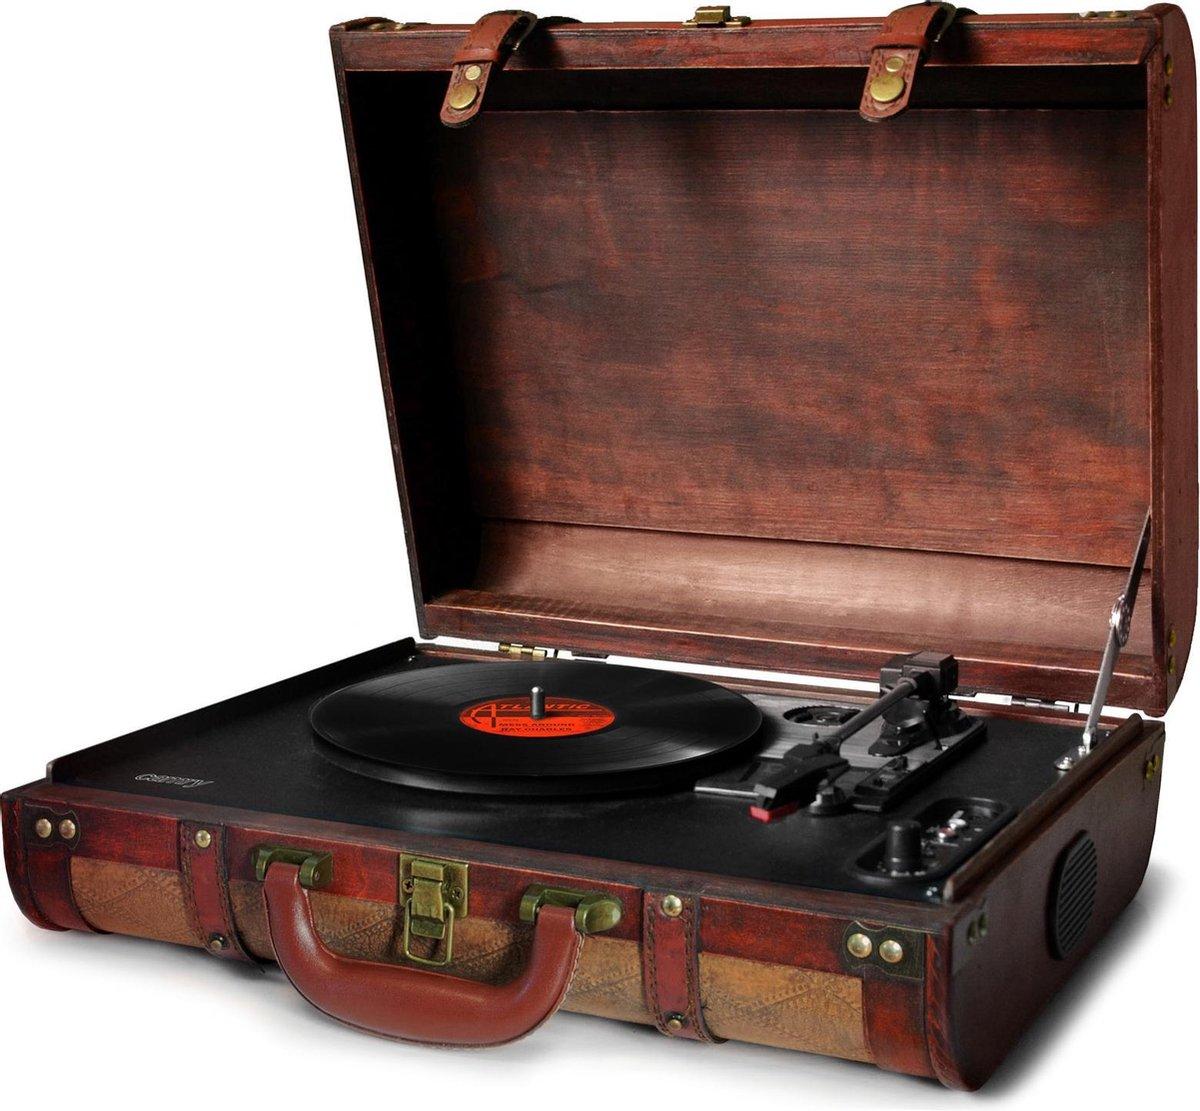 Slike CAMRY Retro gramofon u koferu CR1149